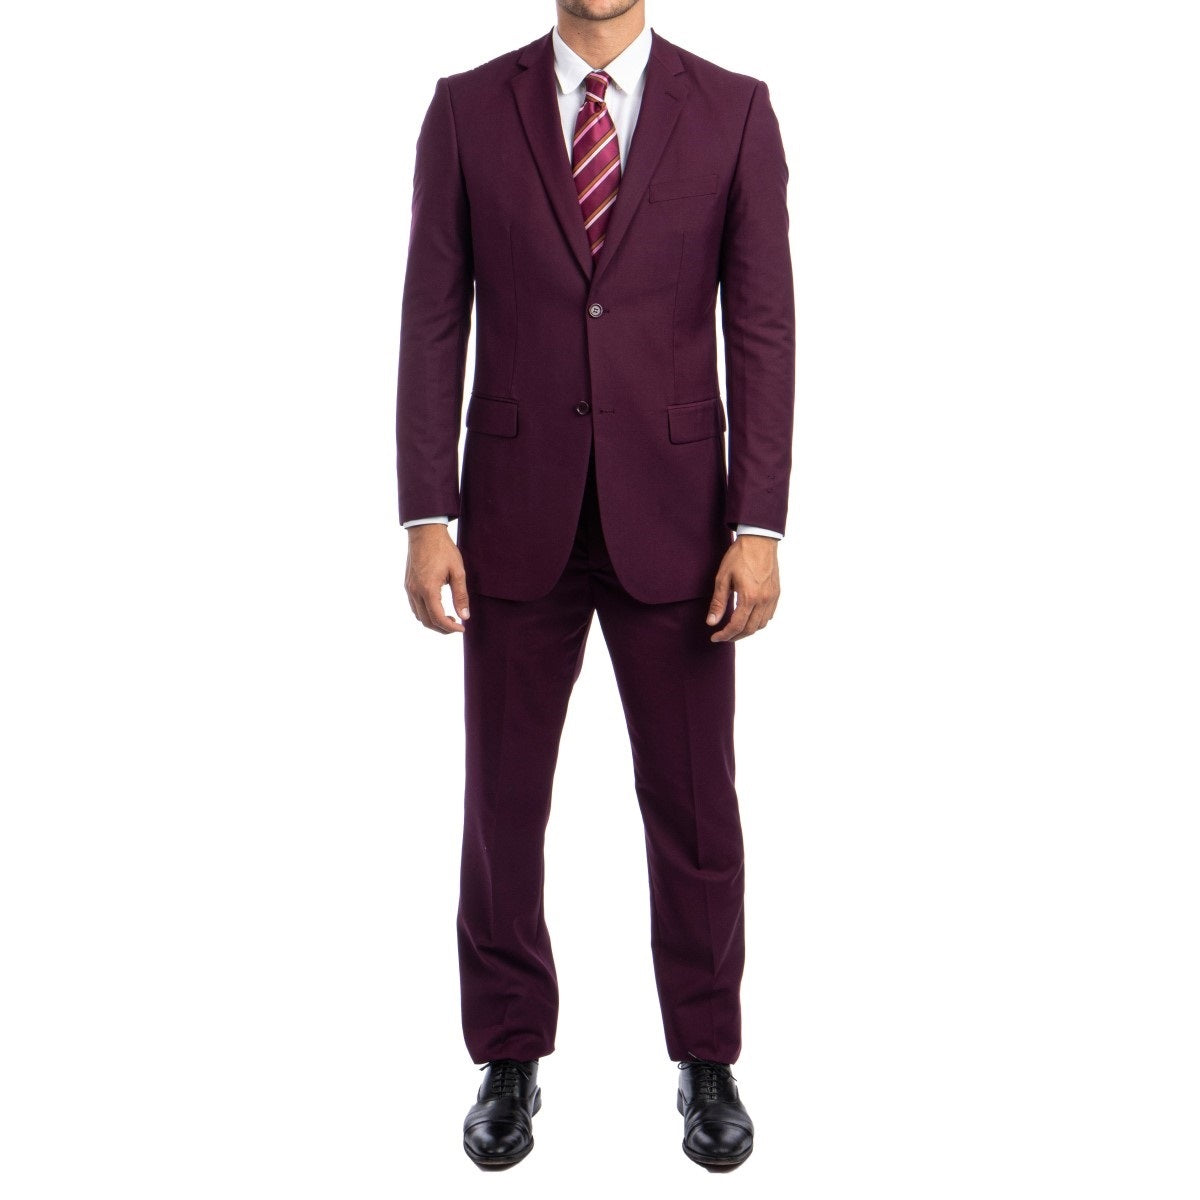 Traje Formal para Hombre TA-M202-15 Burgundy - Formal Suit for Men